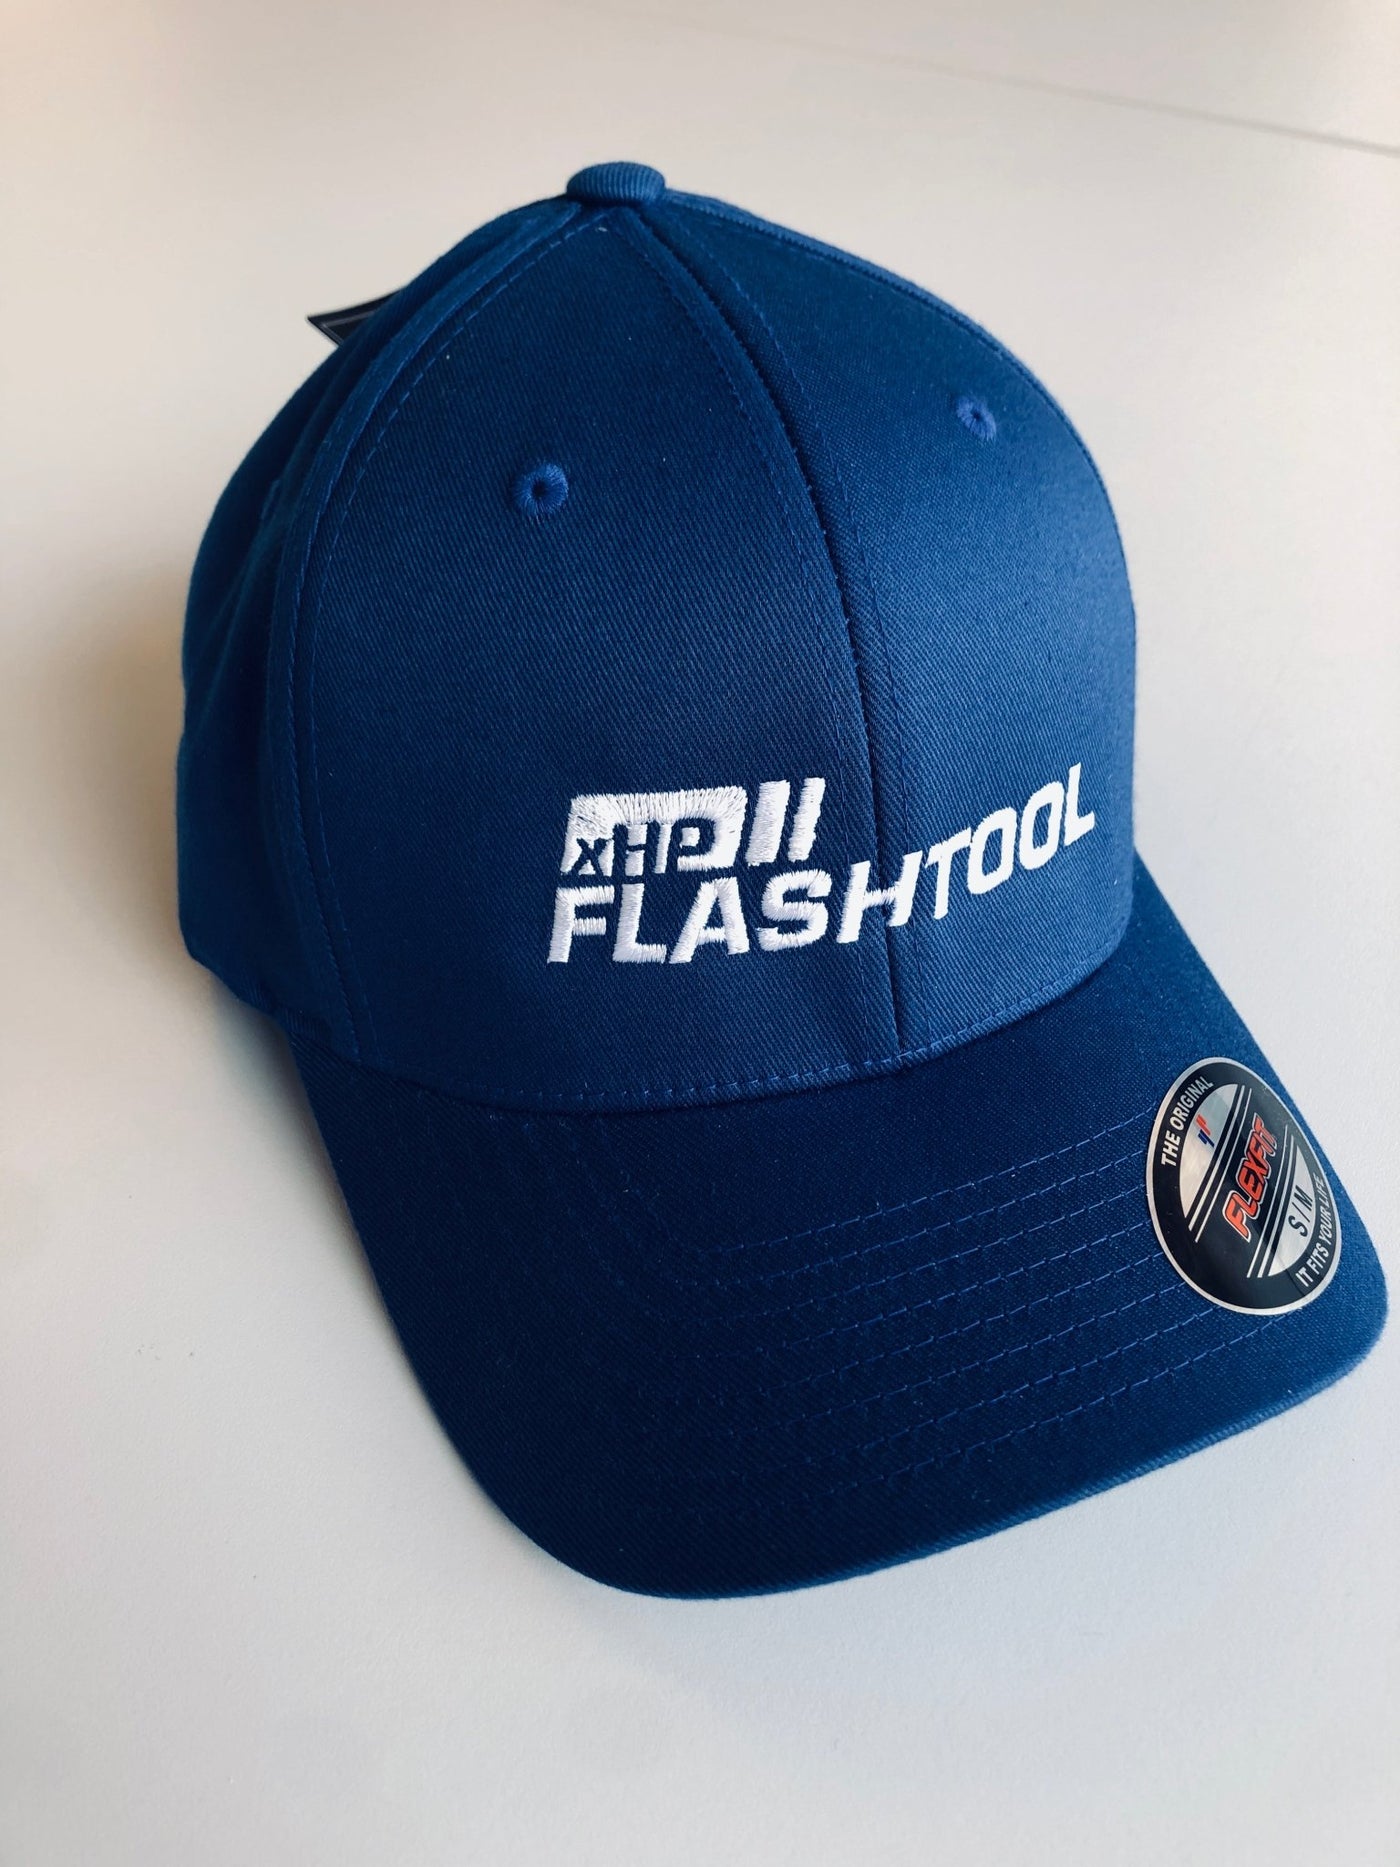 Casquette de baseball xHP Flashtool (Flexfit) - Bimmer-Connect.com